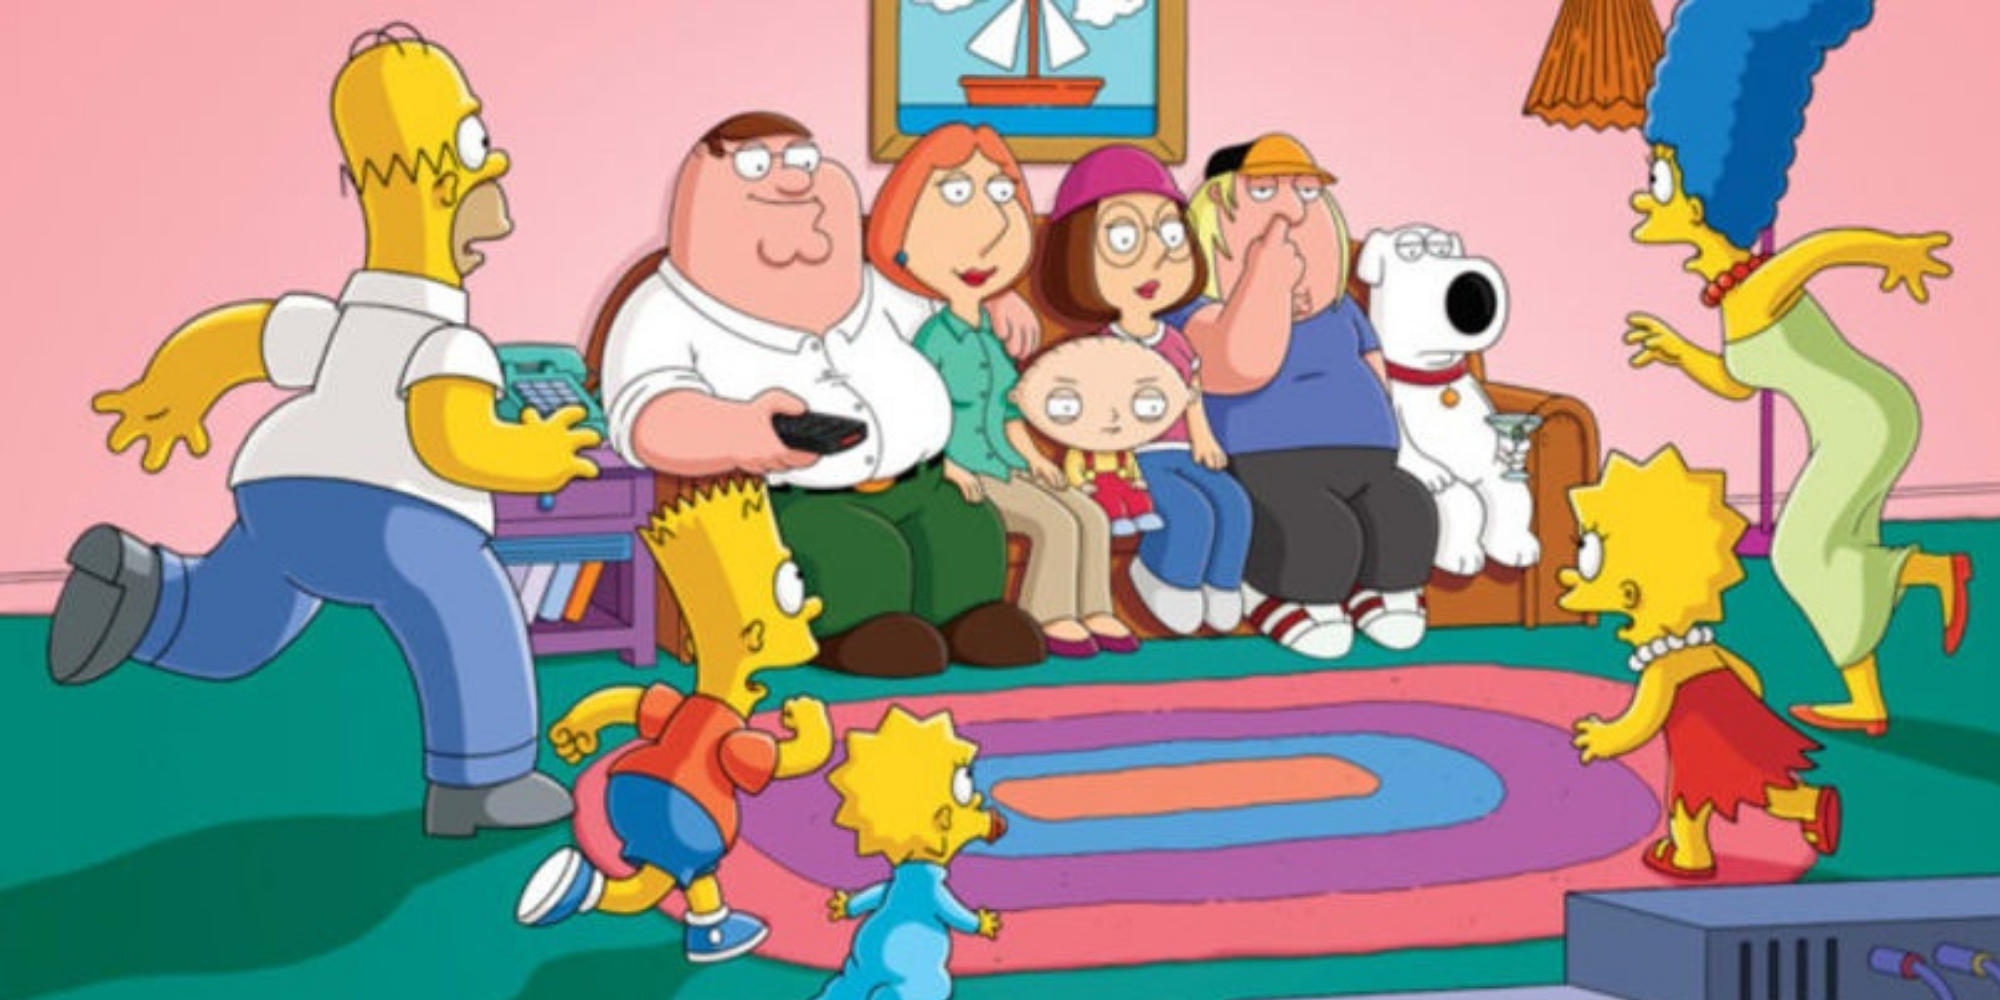 La famille Griffin assise sur le canapé qui appartient à la famille Simpson.